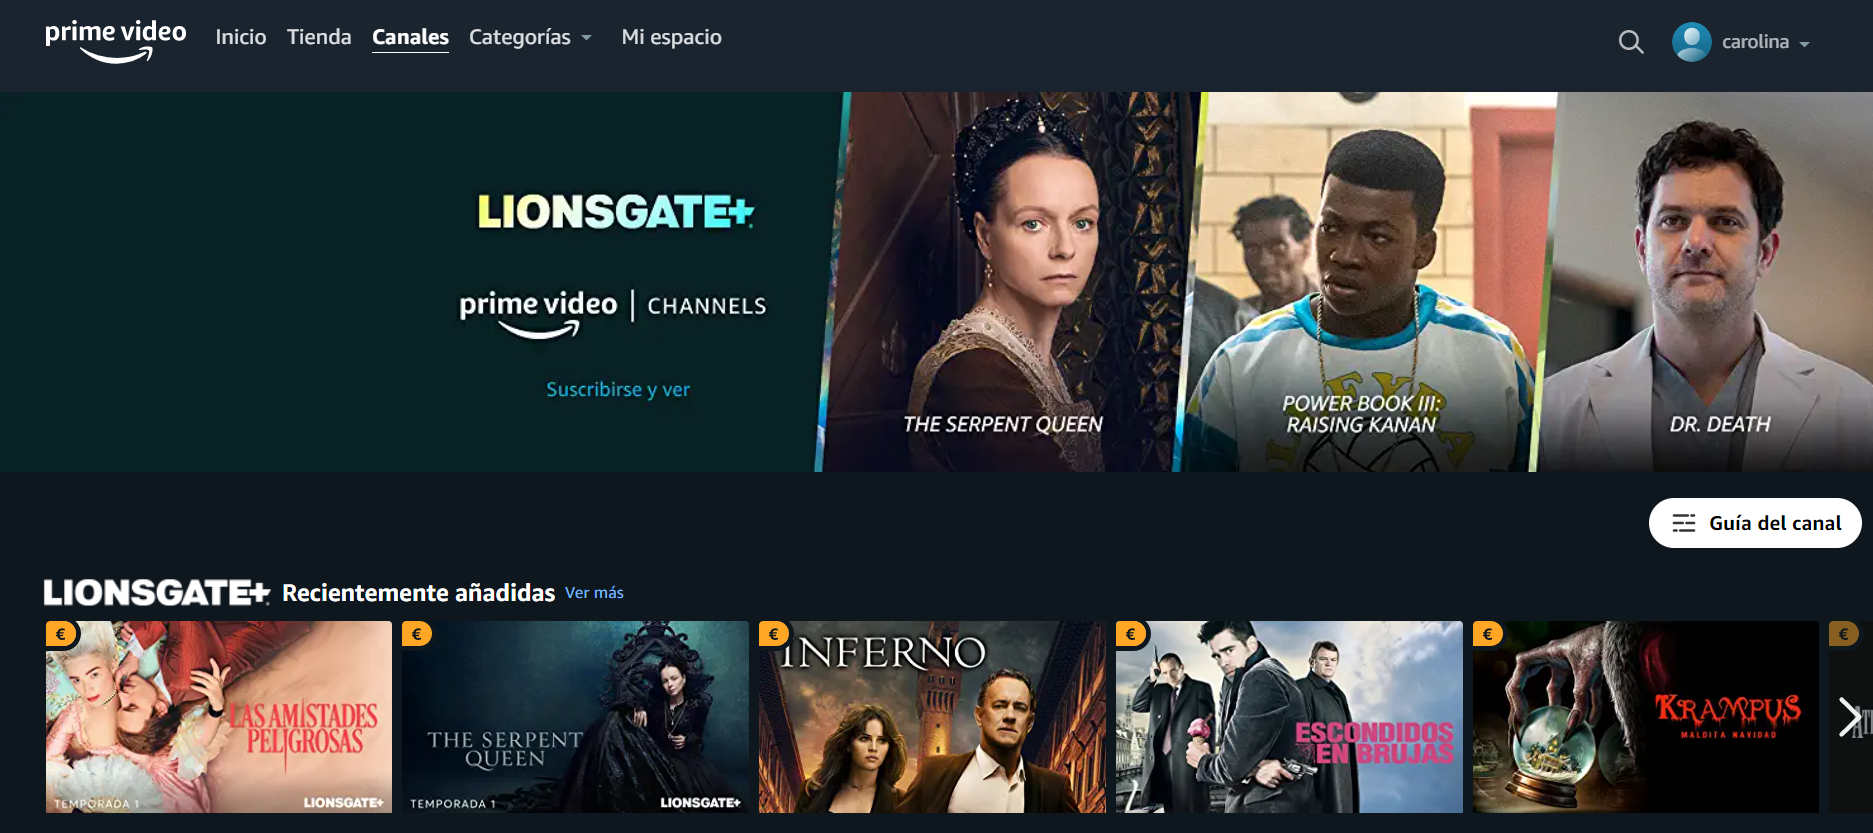 Lionsgate+: Qué es, catálogo de series y películas, precios y planes